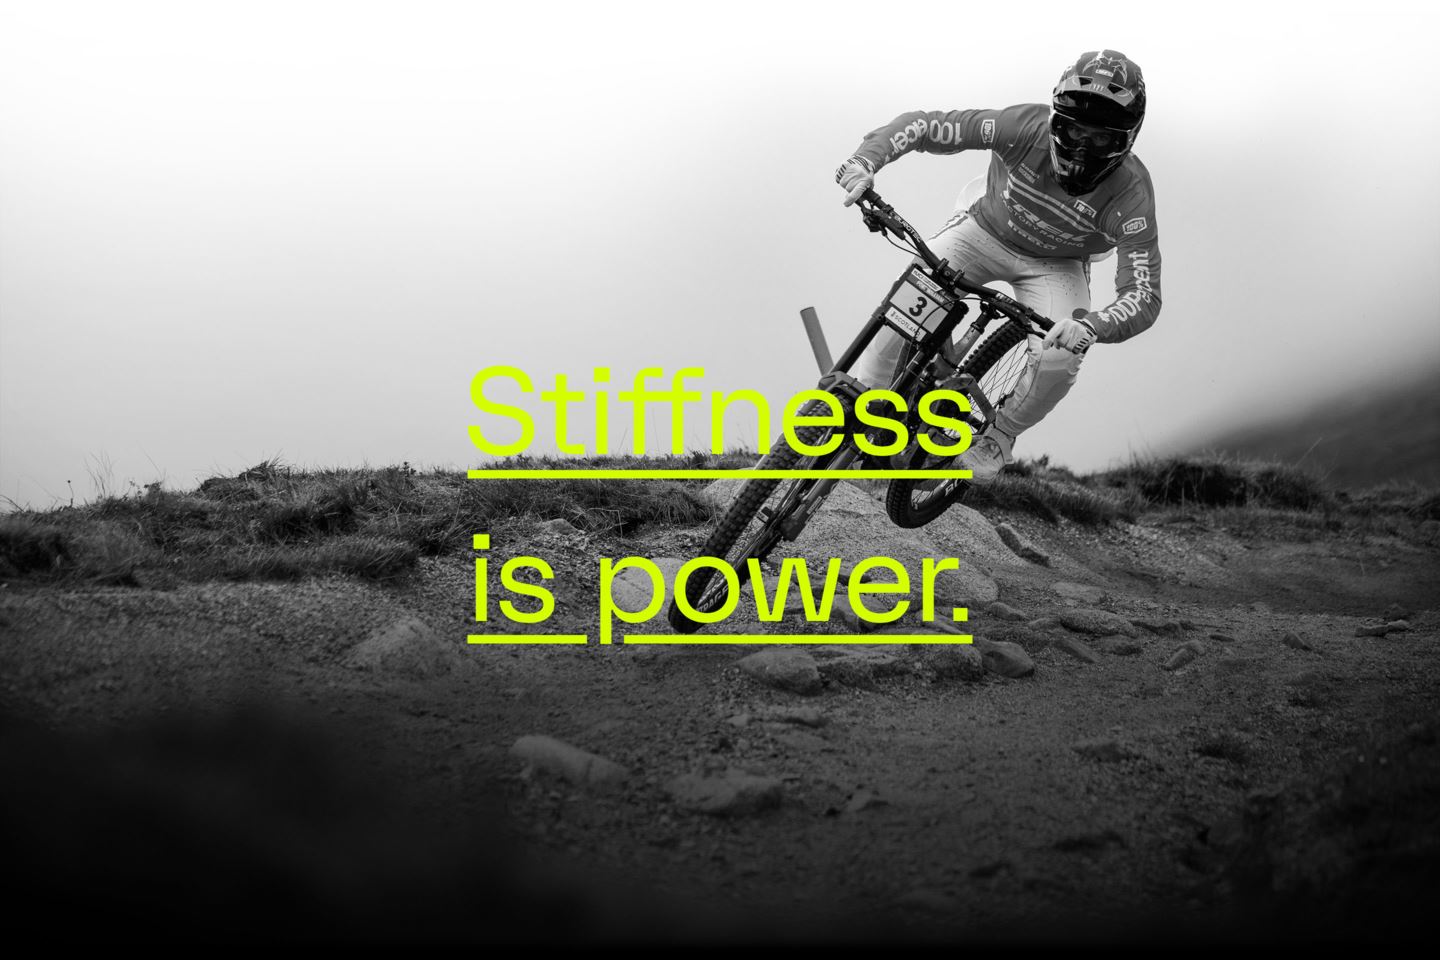 Stiffness is power.